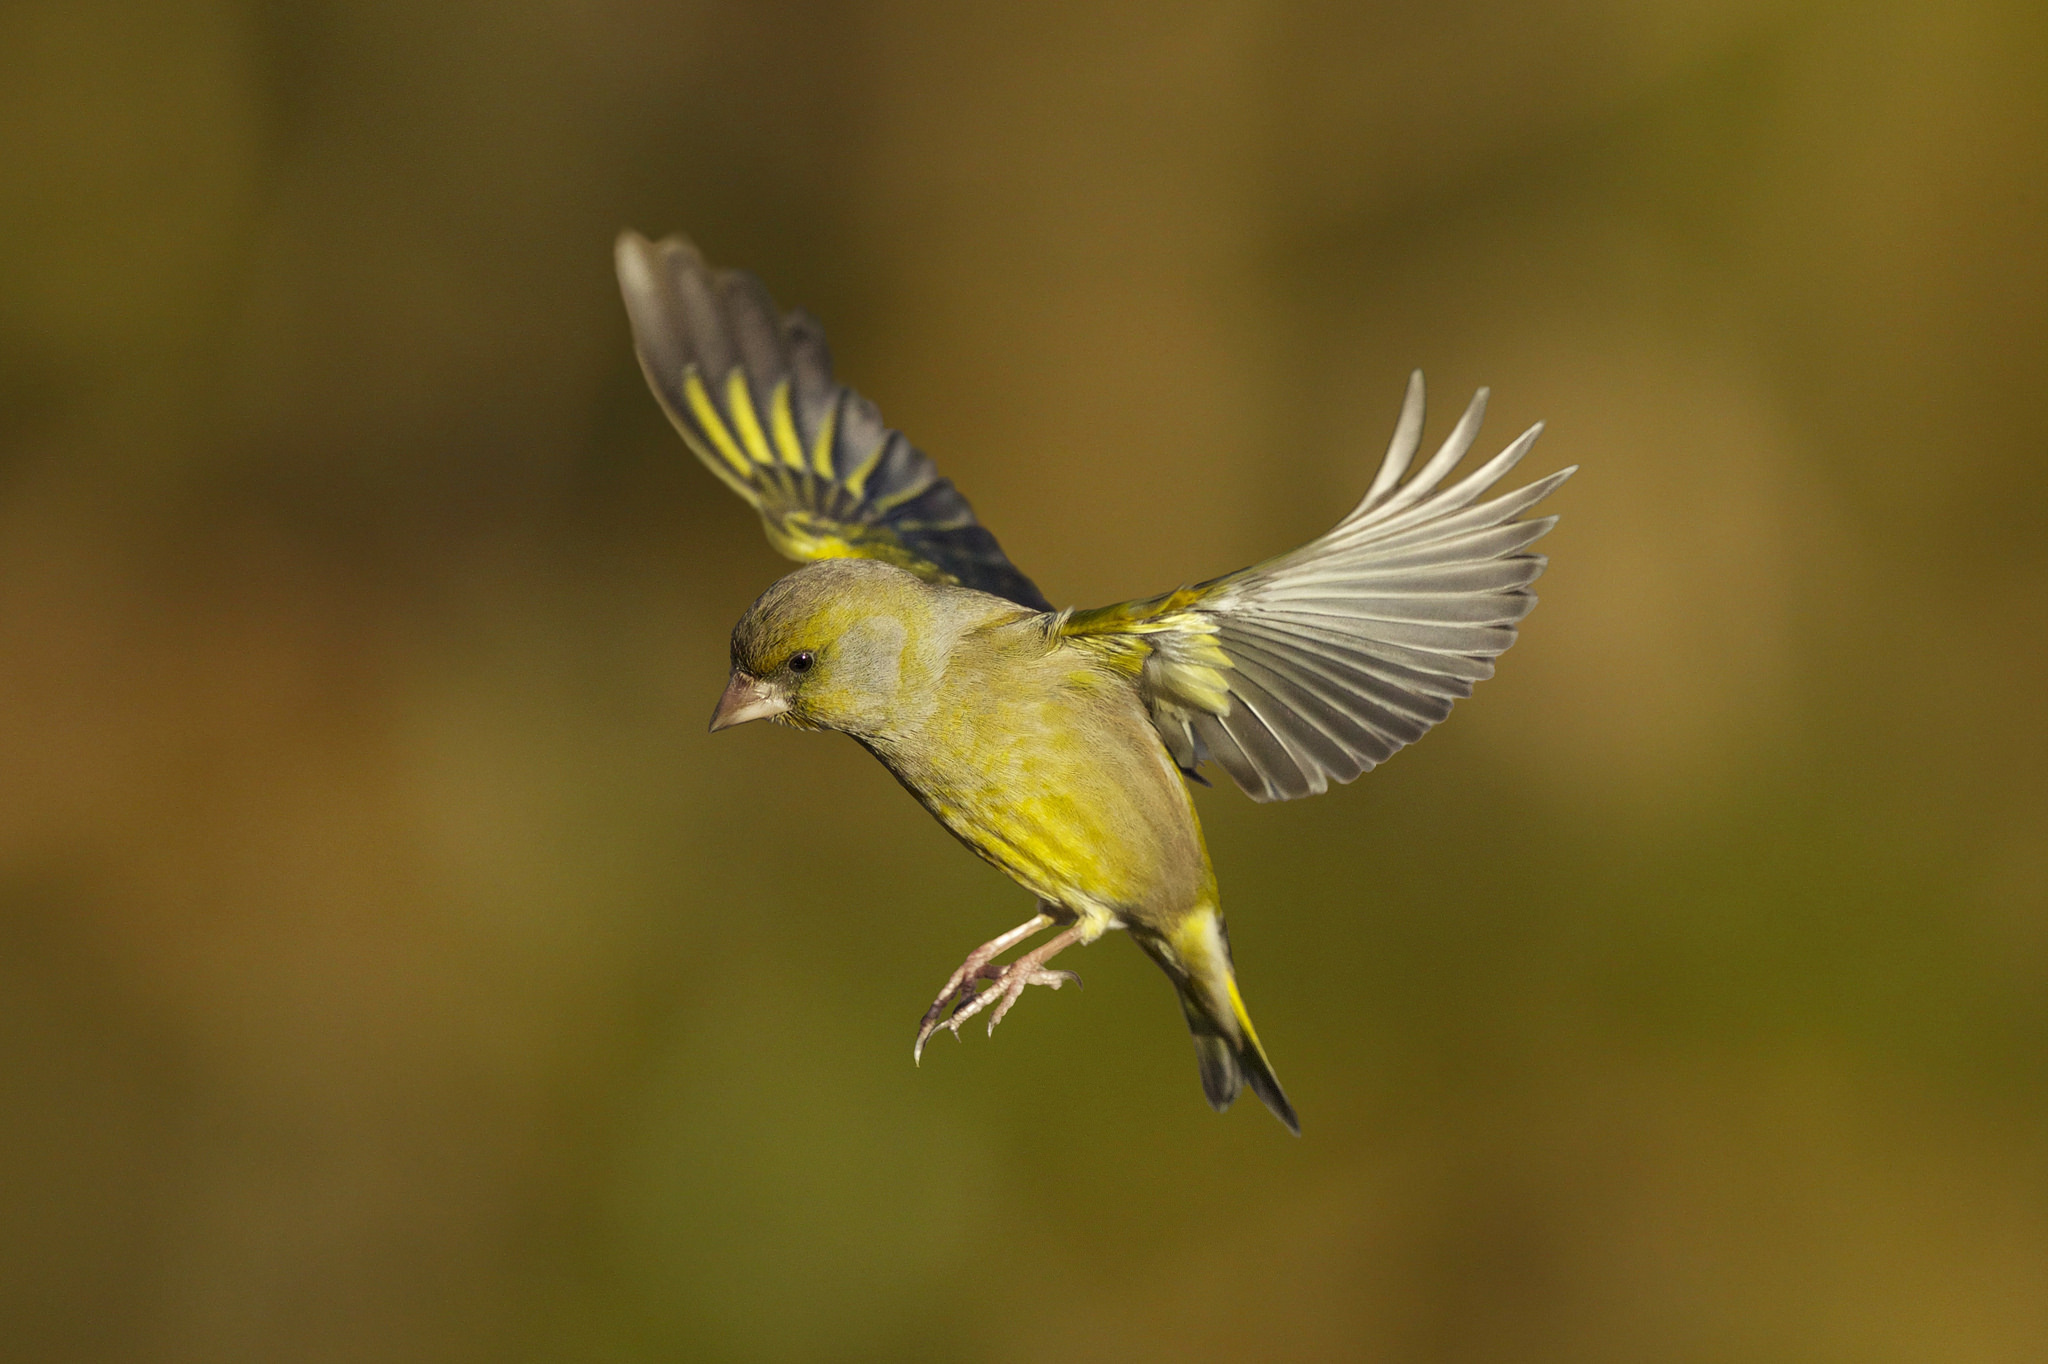 Tapeta na monitor | Zvířata | pták, krása, ptáci světa, Zvonek zelený